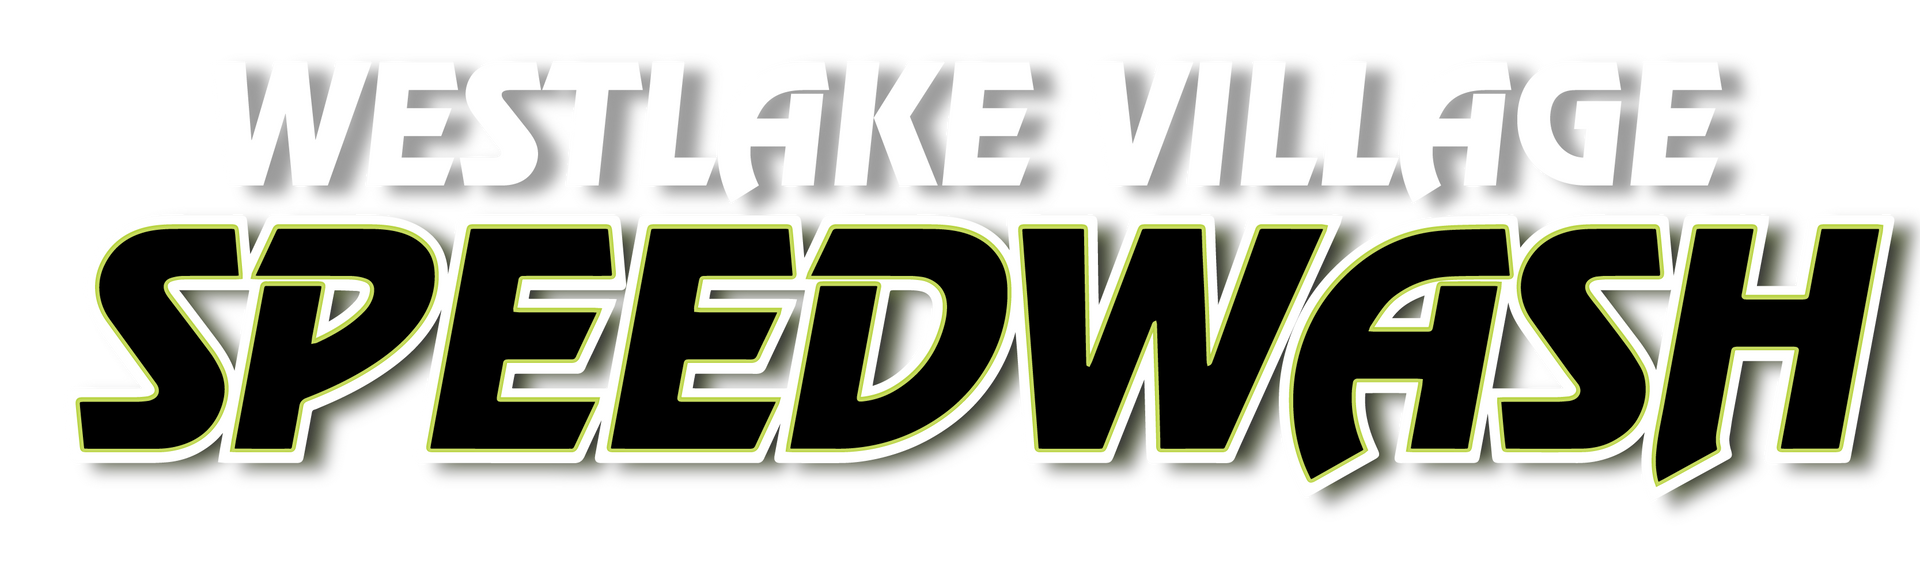 westlake speedwash logo - new gas station and car wash coming to westlake village California